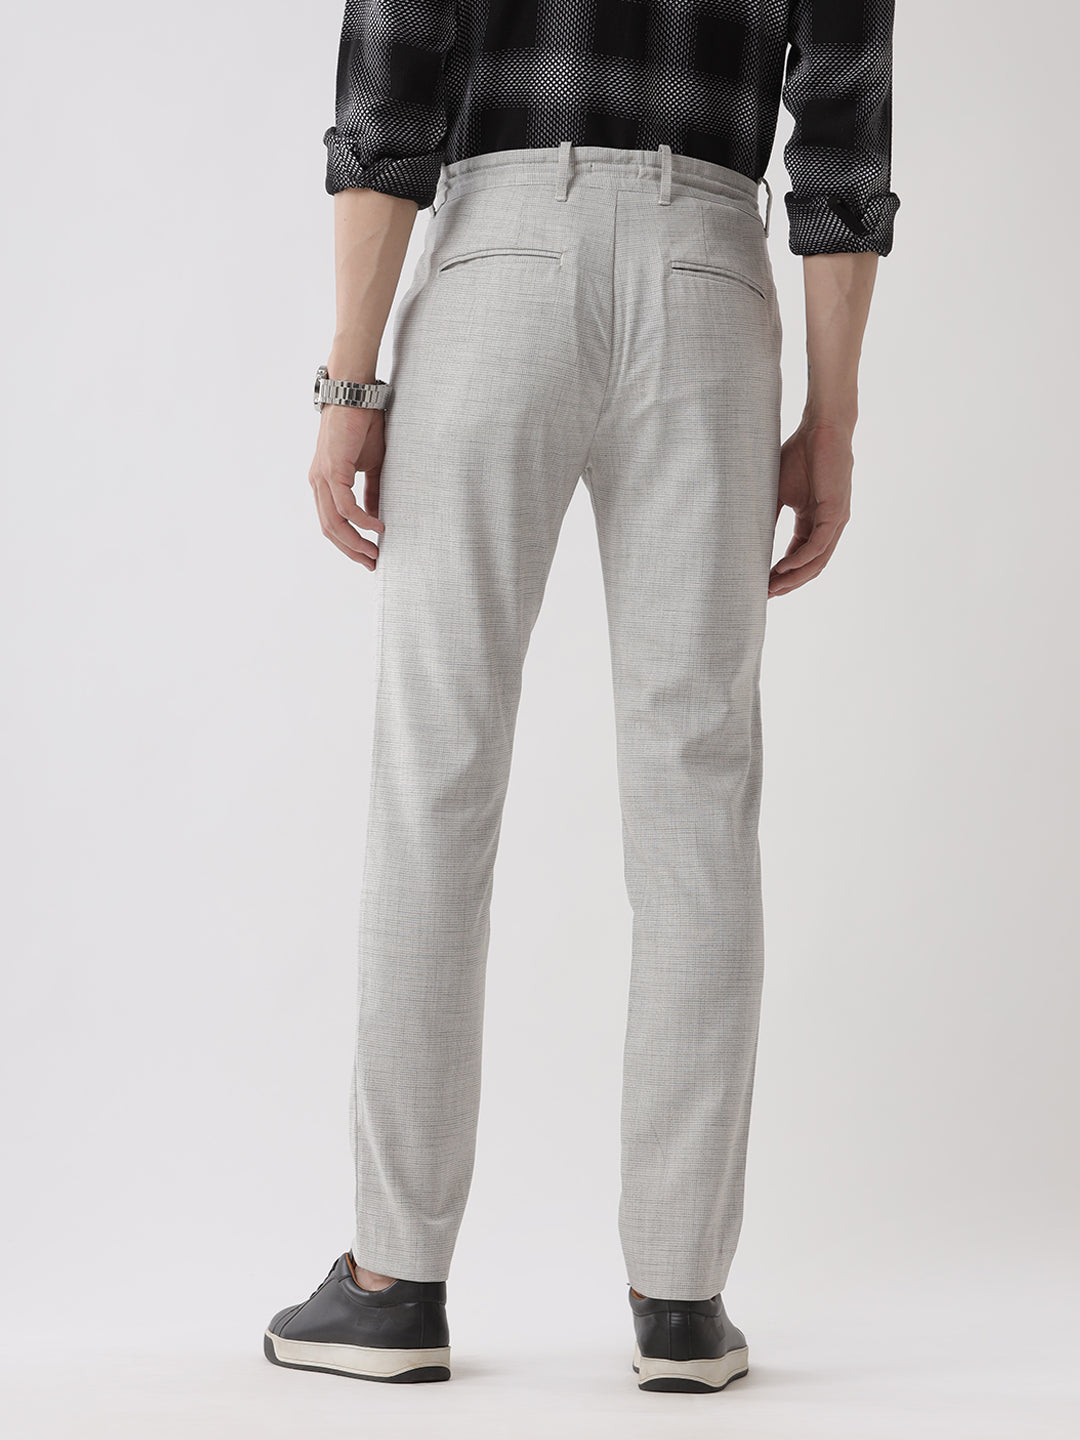 Dyed Grey Drawstring Trouser